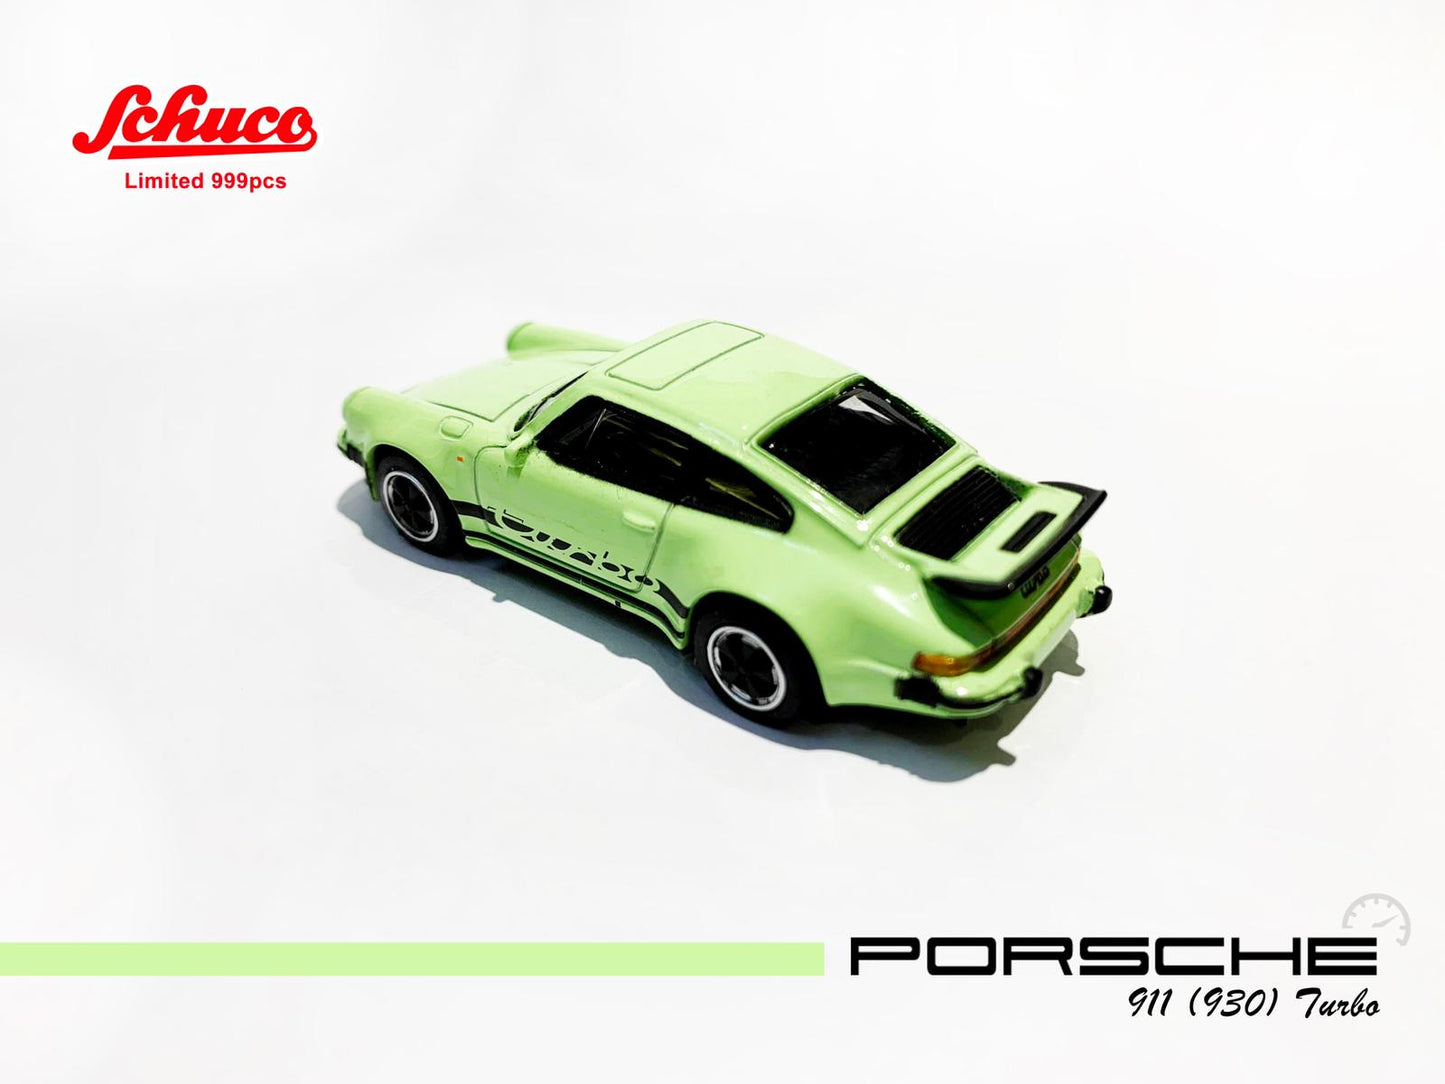 Schuco 1:64 Scale Schuco Hong Kong Exclusive
Porsche 911 Turbo Apple Green (930)